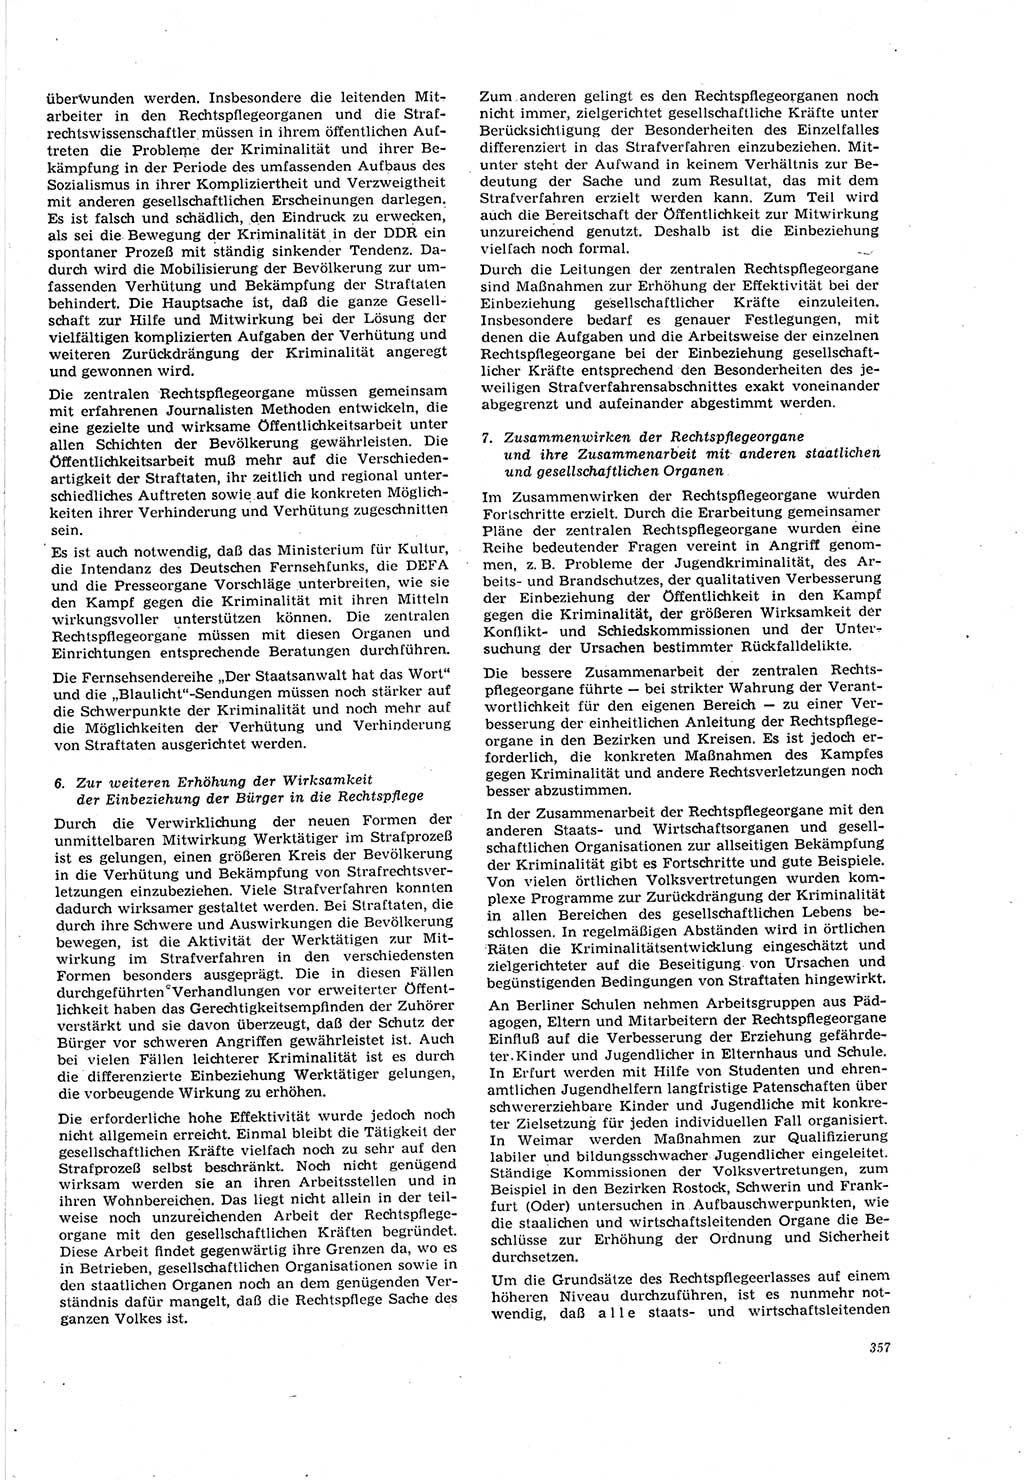 Neue Justiz (NJ), Zeitschrift für Recht und Rechtswissenschaft [Deutsche Demokratische Republik (DDR)], 20. Jahrgang 1966, Seite 357 (NJ DDR 1966, S. 357)